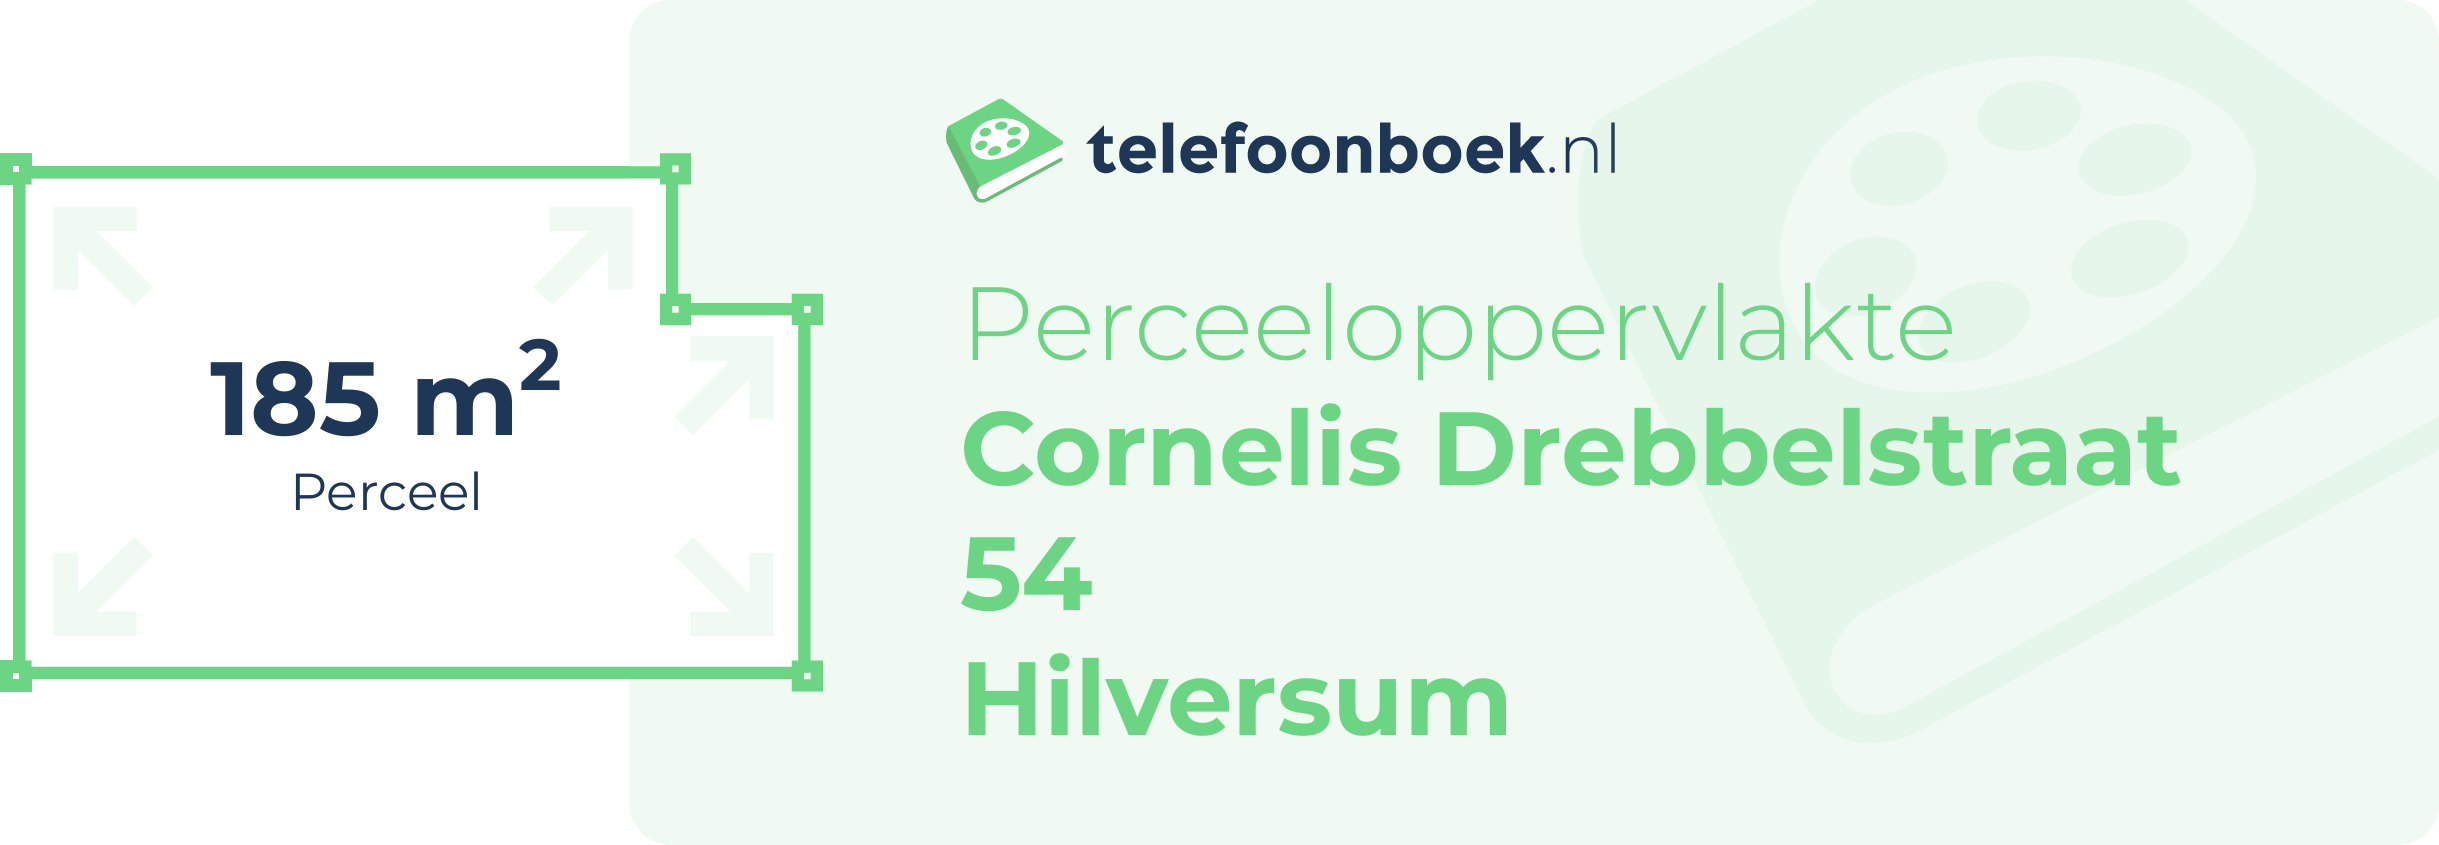 Perceeloppervlakte Cornelis Drebbelstraat 54 Hilversum